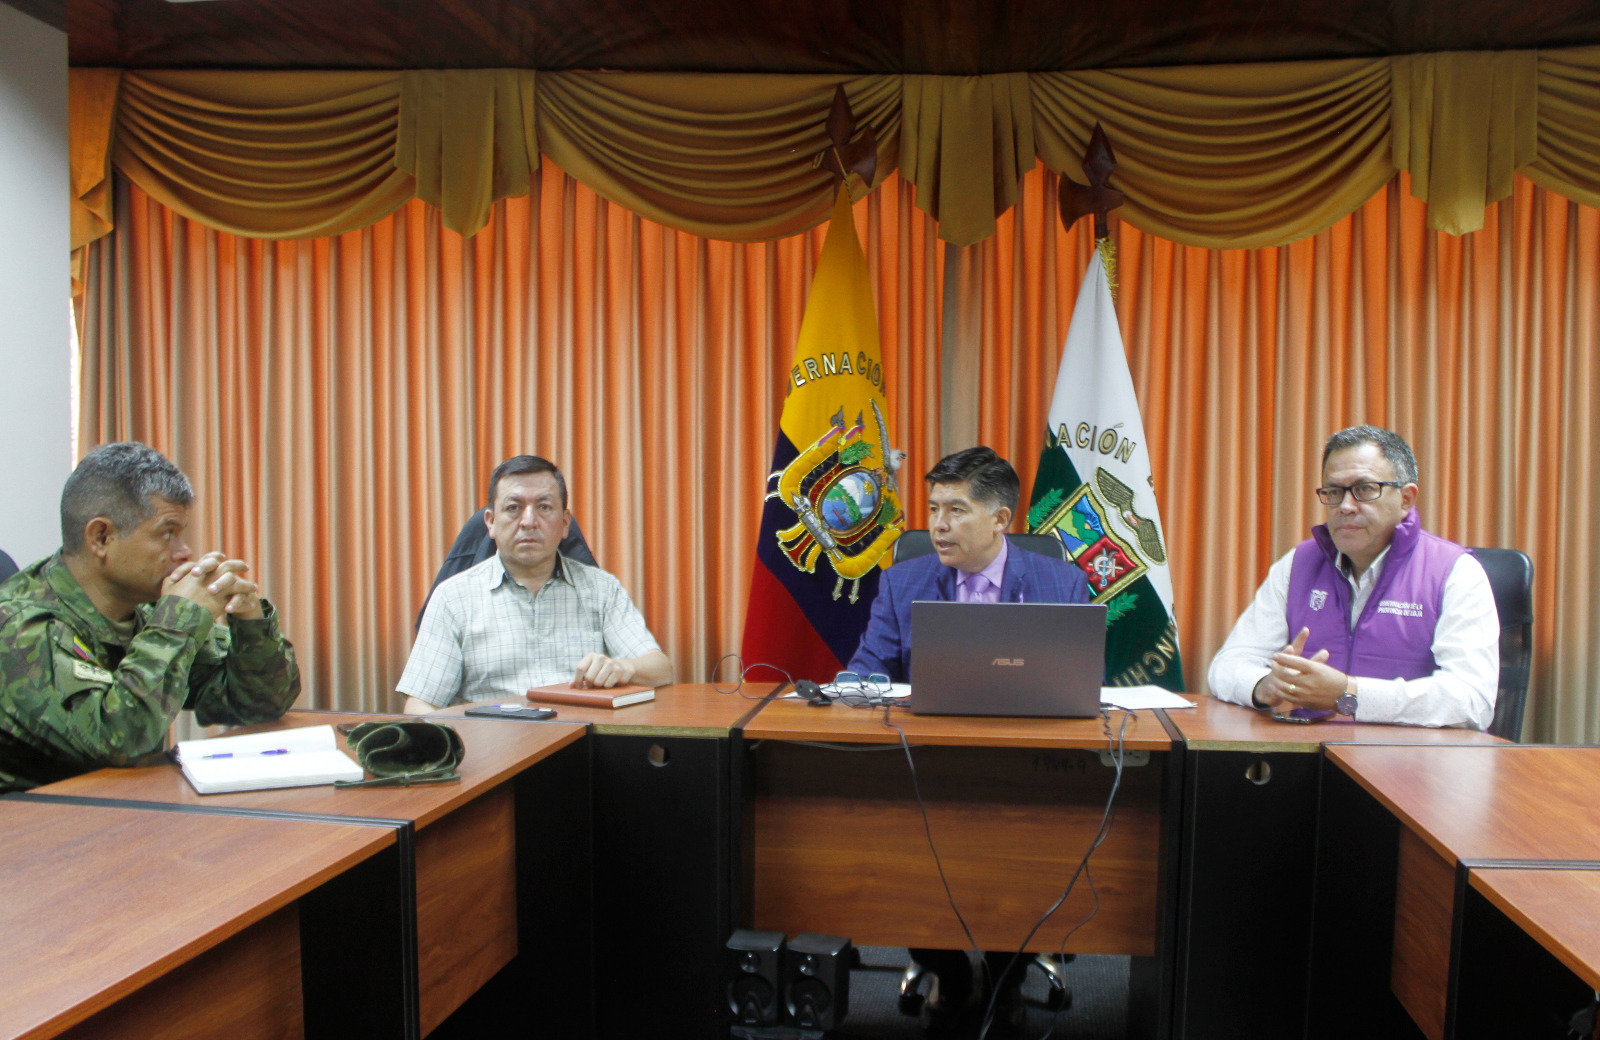 UNIÓN. Gobernadores se reúnen junto a autoridades policiales y militares para coordinar acciones en materia de seguridad en la región amazónica.